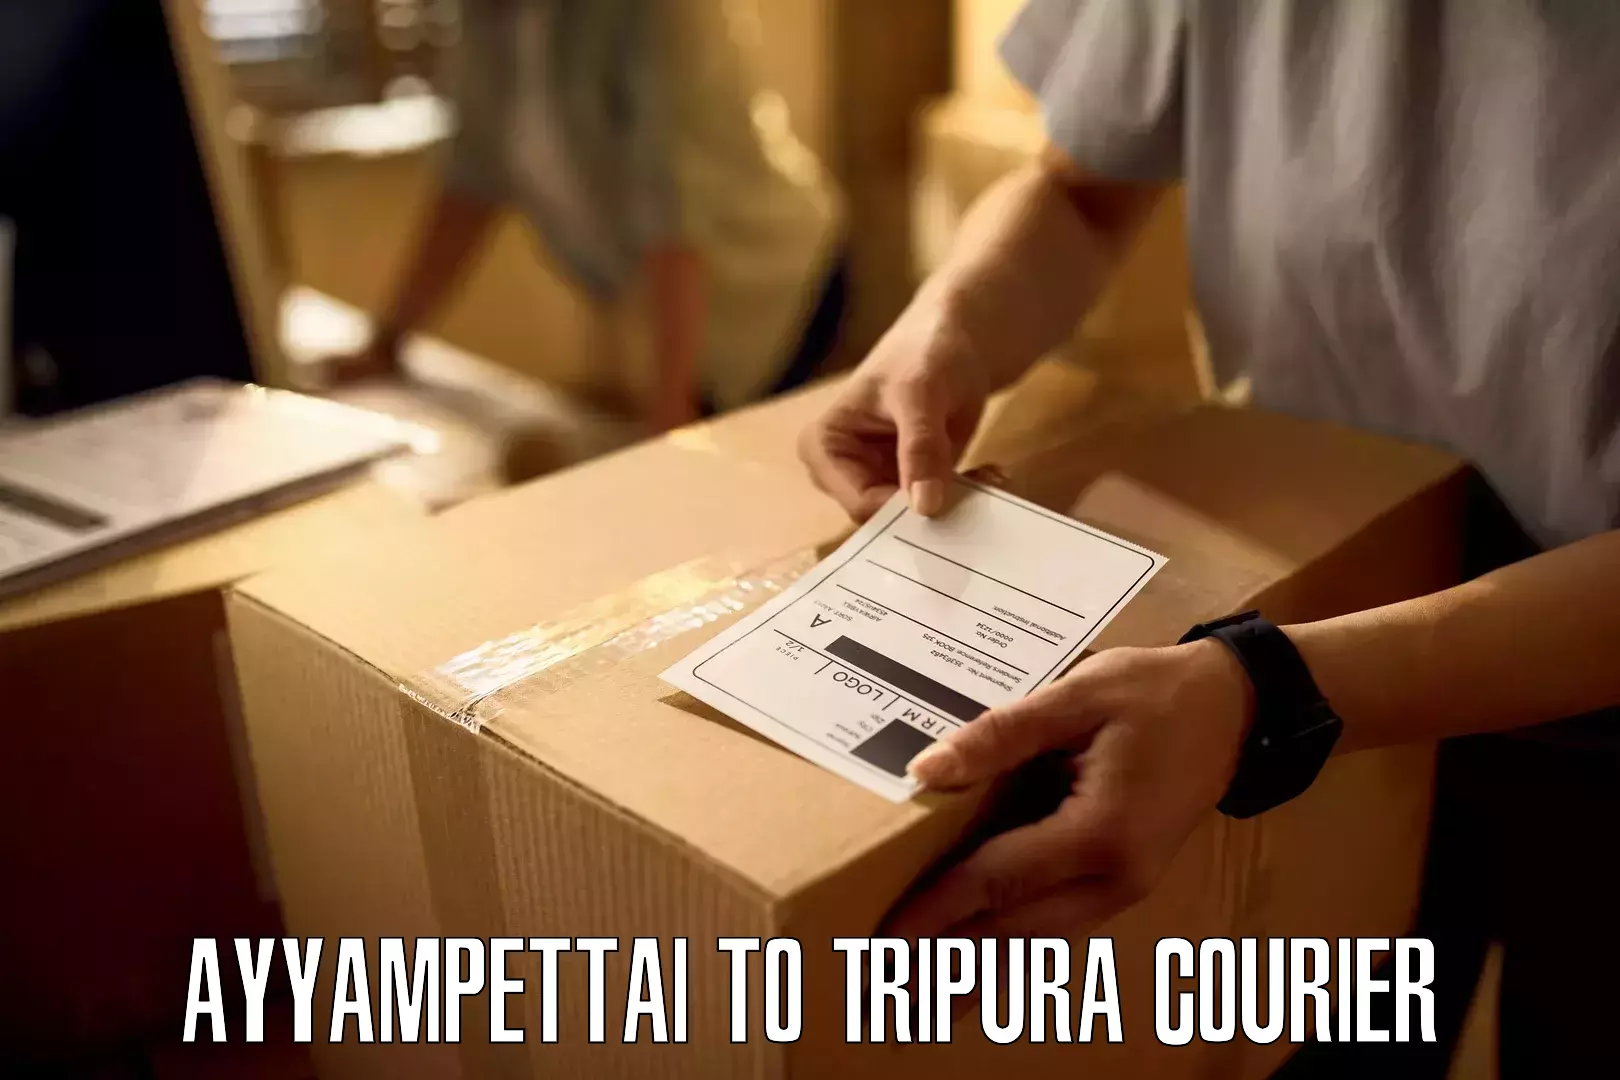 Efficient courier operations Ayyampettai to Ambassa